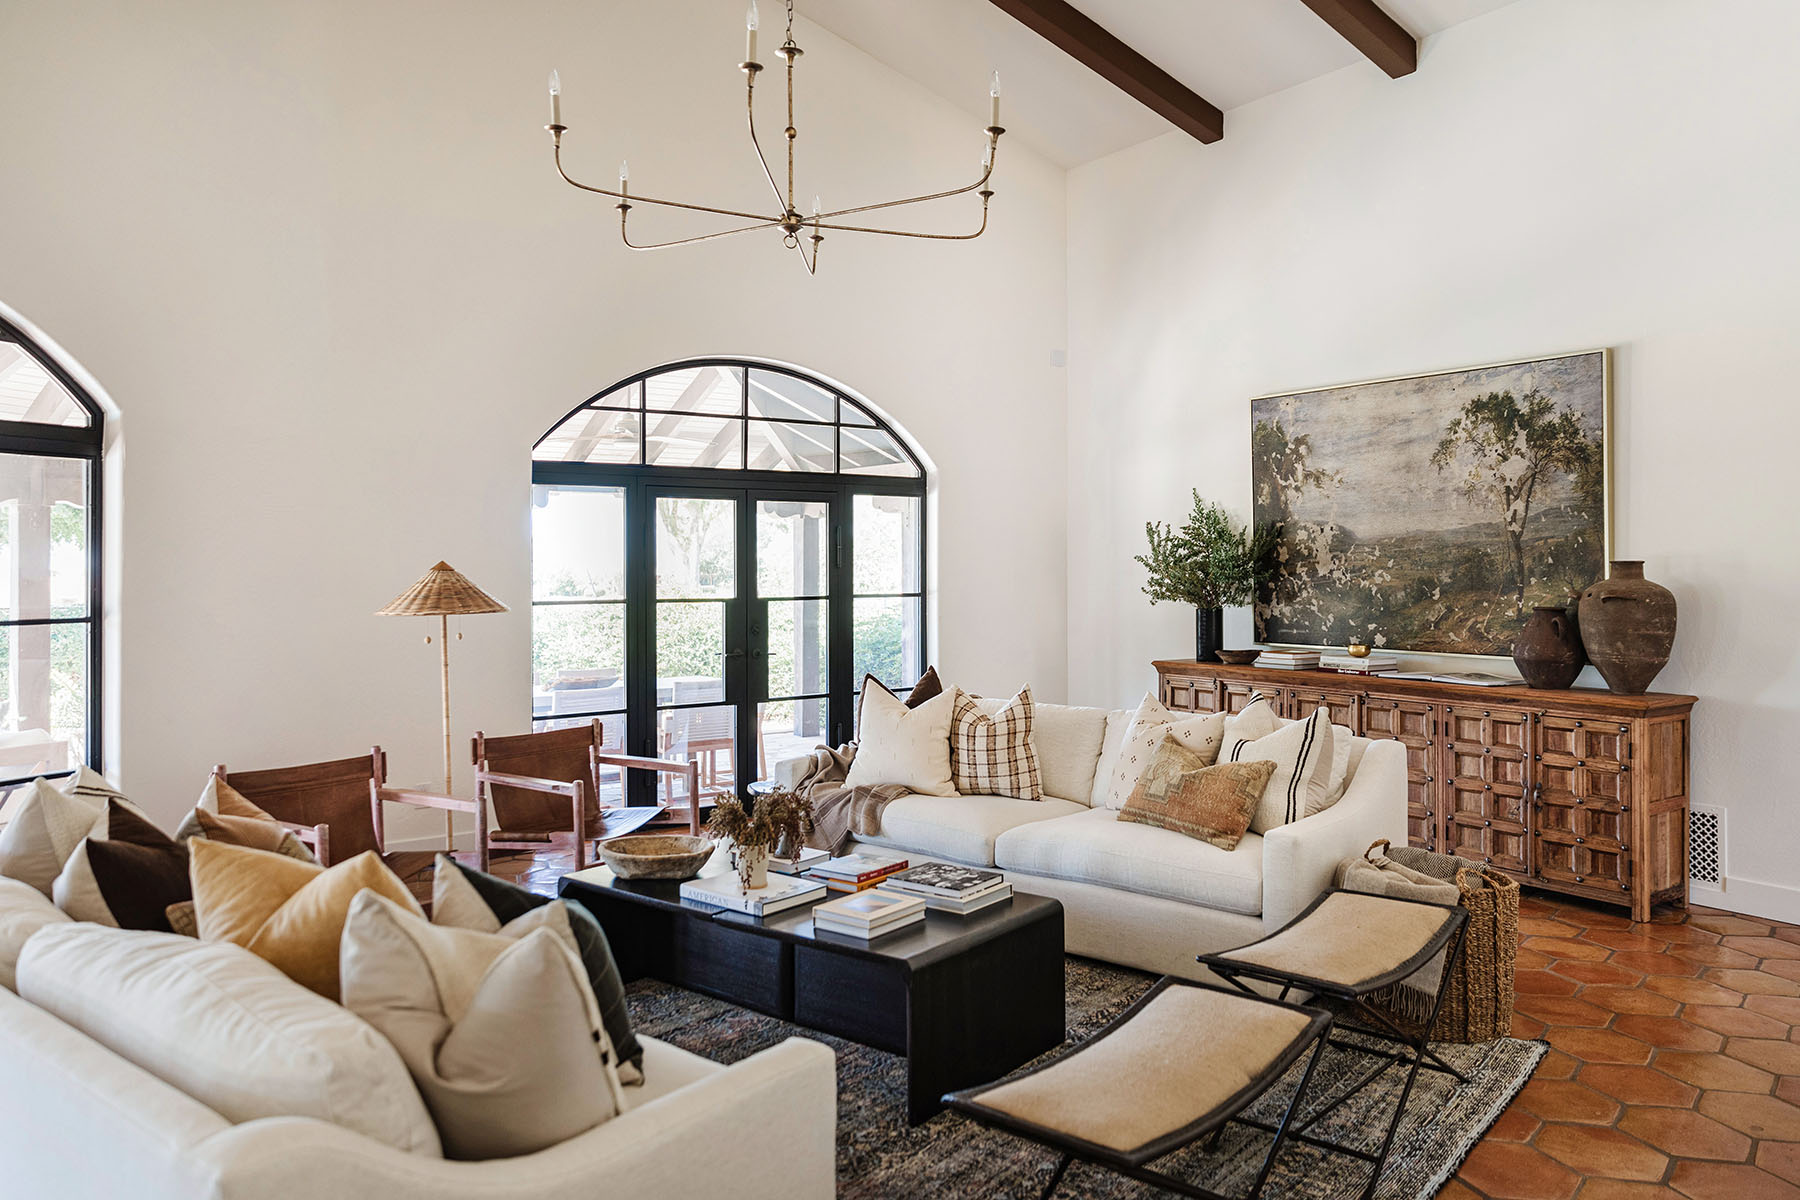 Spanish Revival by Modern Nest | Living Room | Living Room Decor | Spanish Style Home Remodel | Scottsdale, Arizona Home Remodel | Market by Modern Nest | Modern Nest | Scottsdale, AZ | Design, Build, Furnish